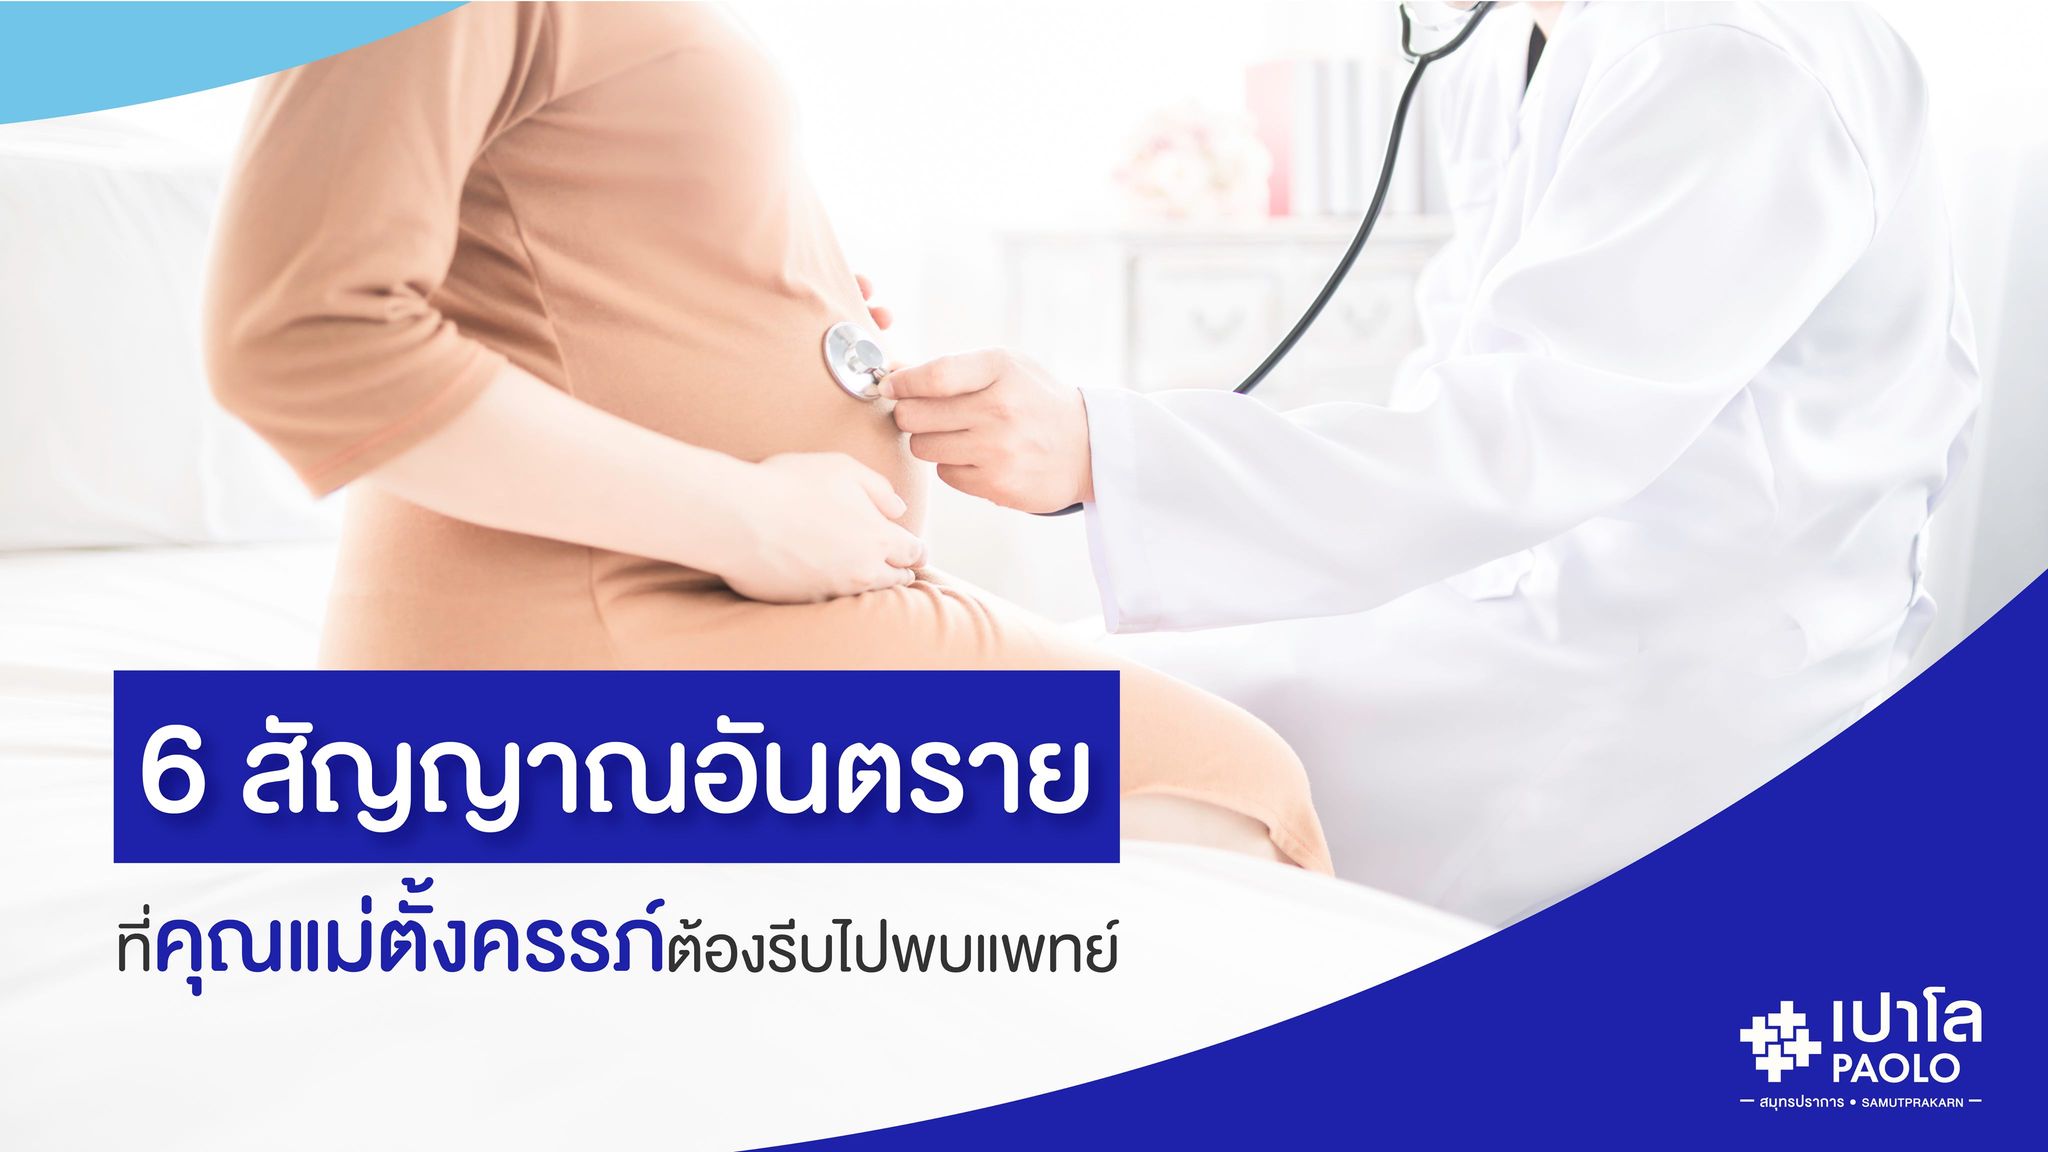 “6 สัญญาณอันตรายที่คุณแม่ตั้งครรภ์ต้องรีบไปพบแพทย์”